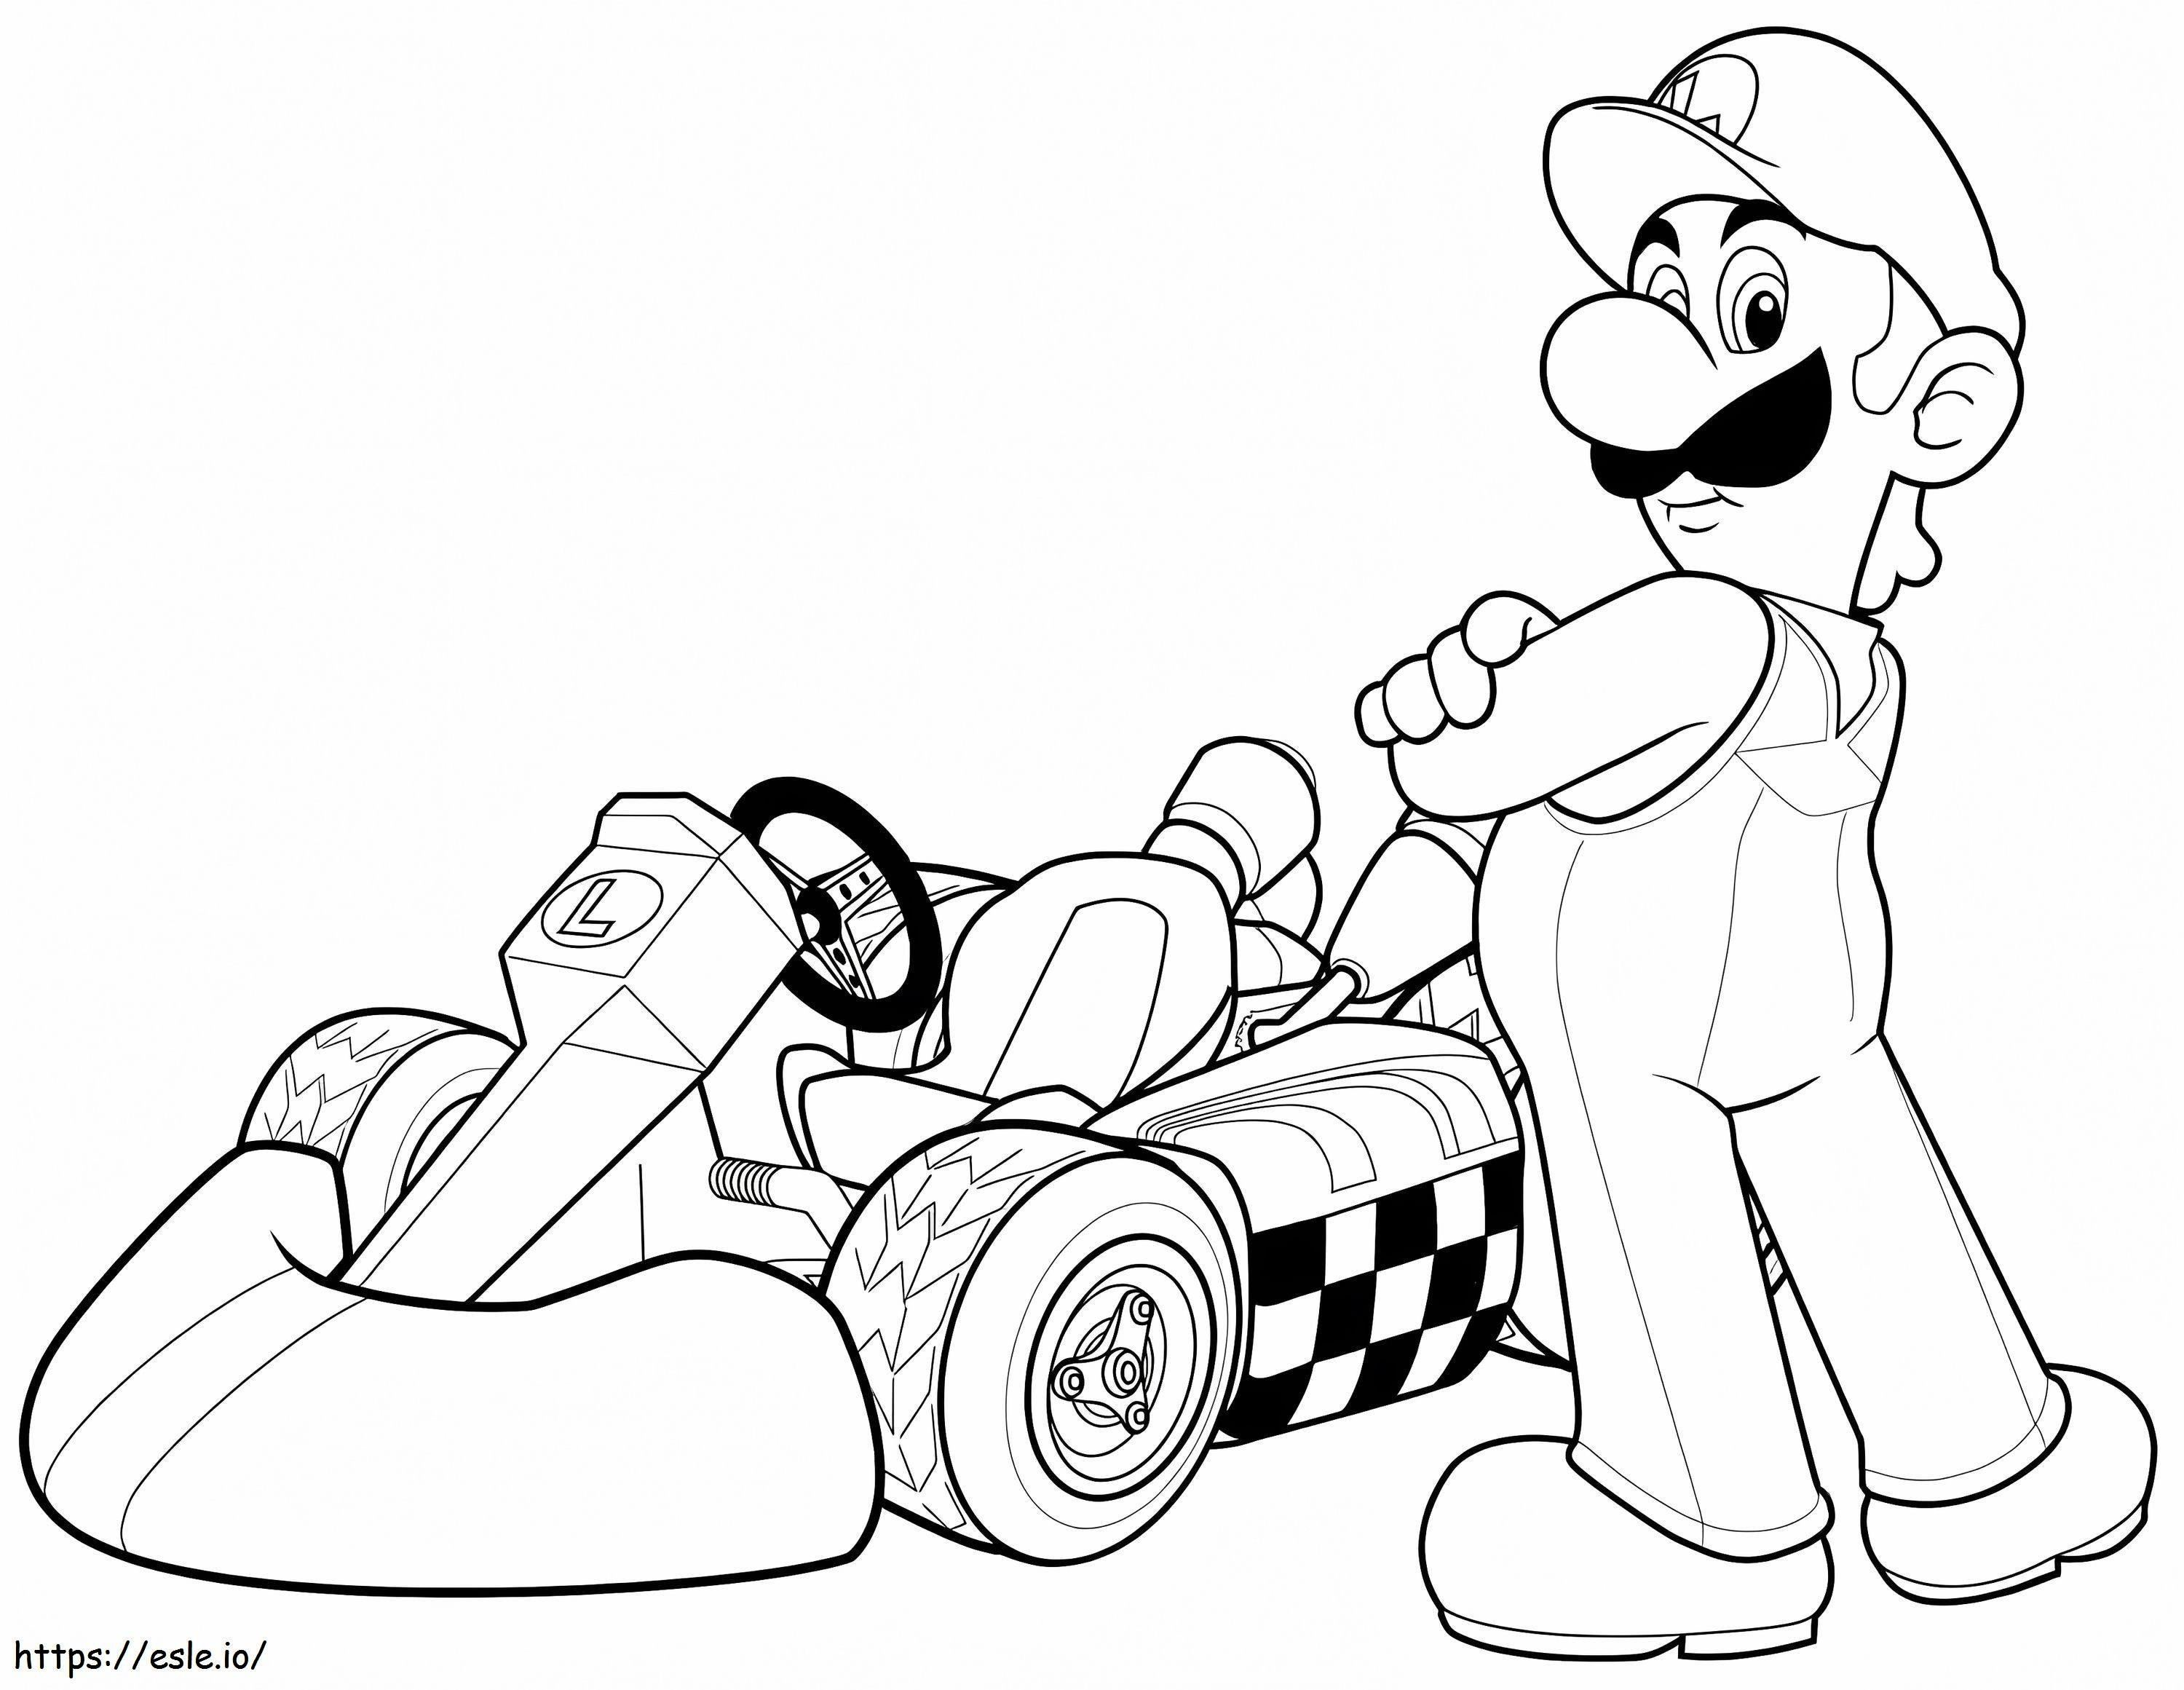 Luigi Mario Kart na Wii kolorowanka